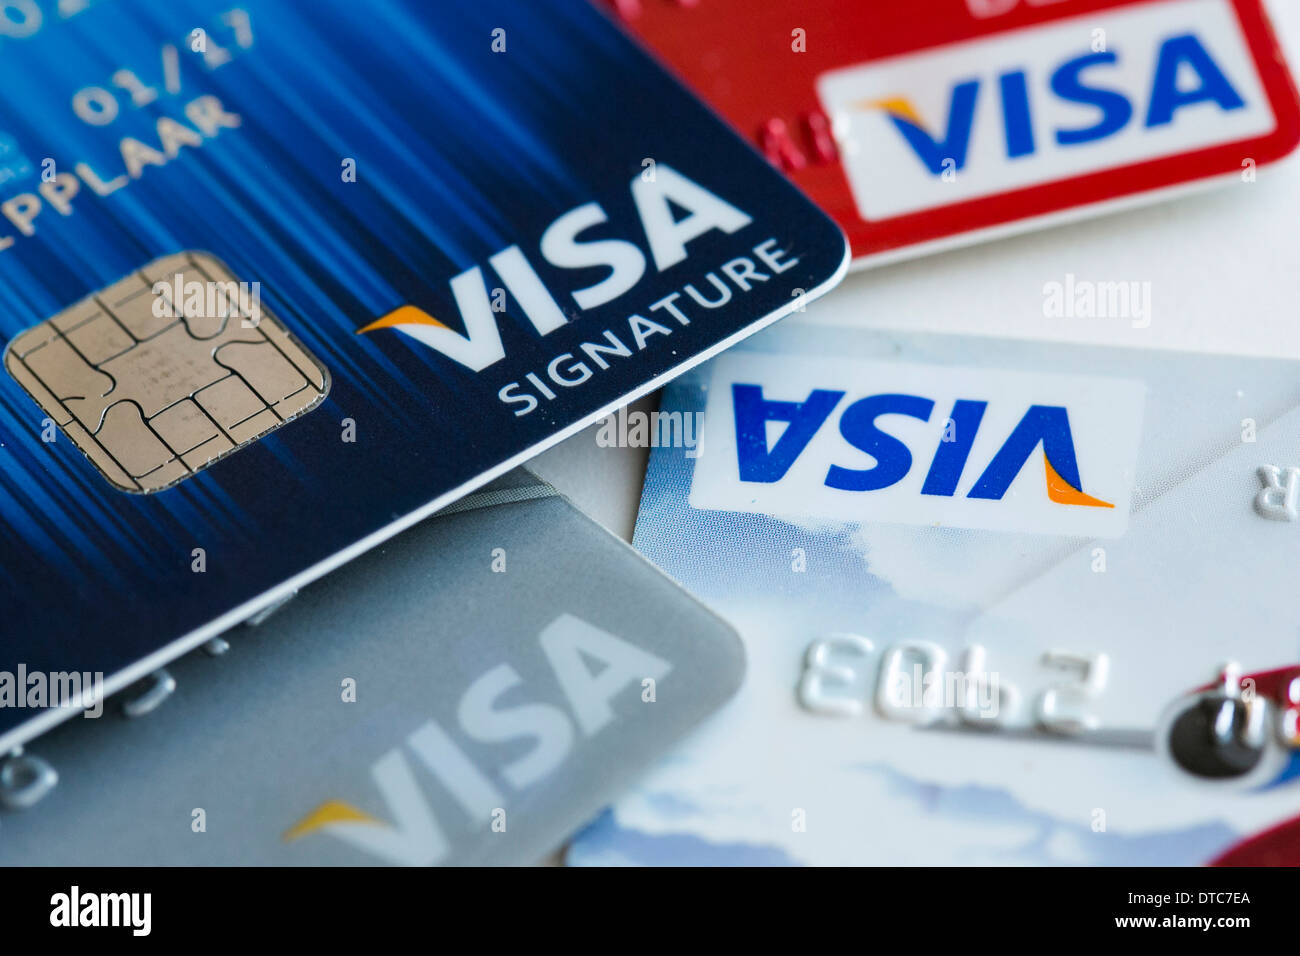 Una tarjeta de crédito Visa con chip EMV, también conocido como "chip y PIN" yuxtapuestas con una tarjeta magnética. Foto de stock